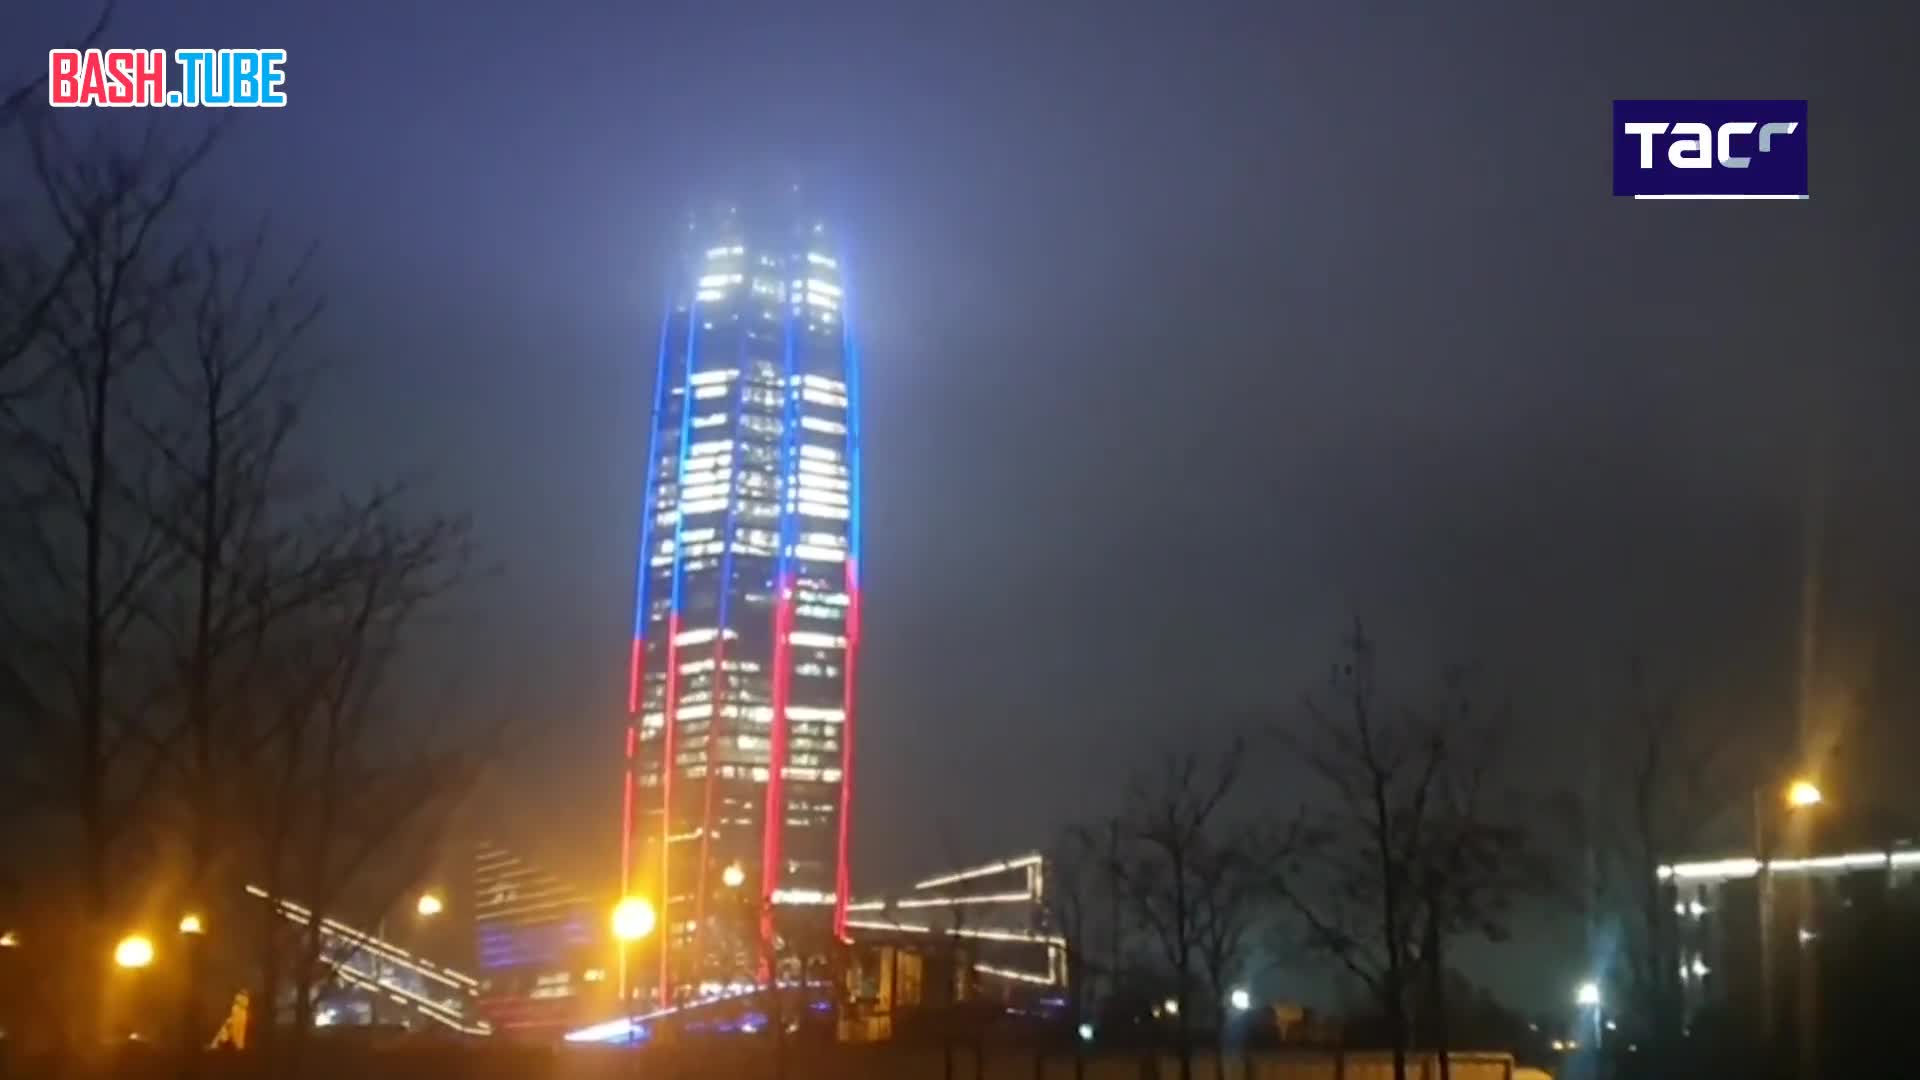  Фасады самого высокого небоскреба Европы, «Лахта центра» в Петербурге, подсветили цветами российского флага